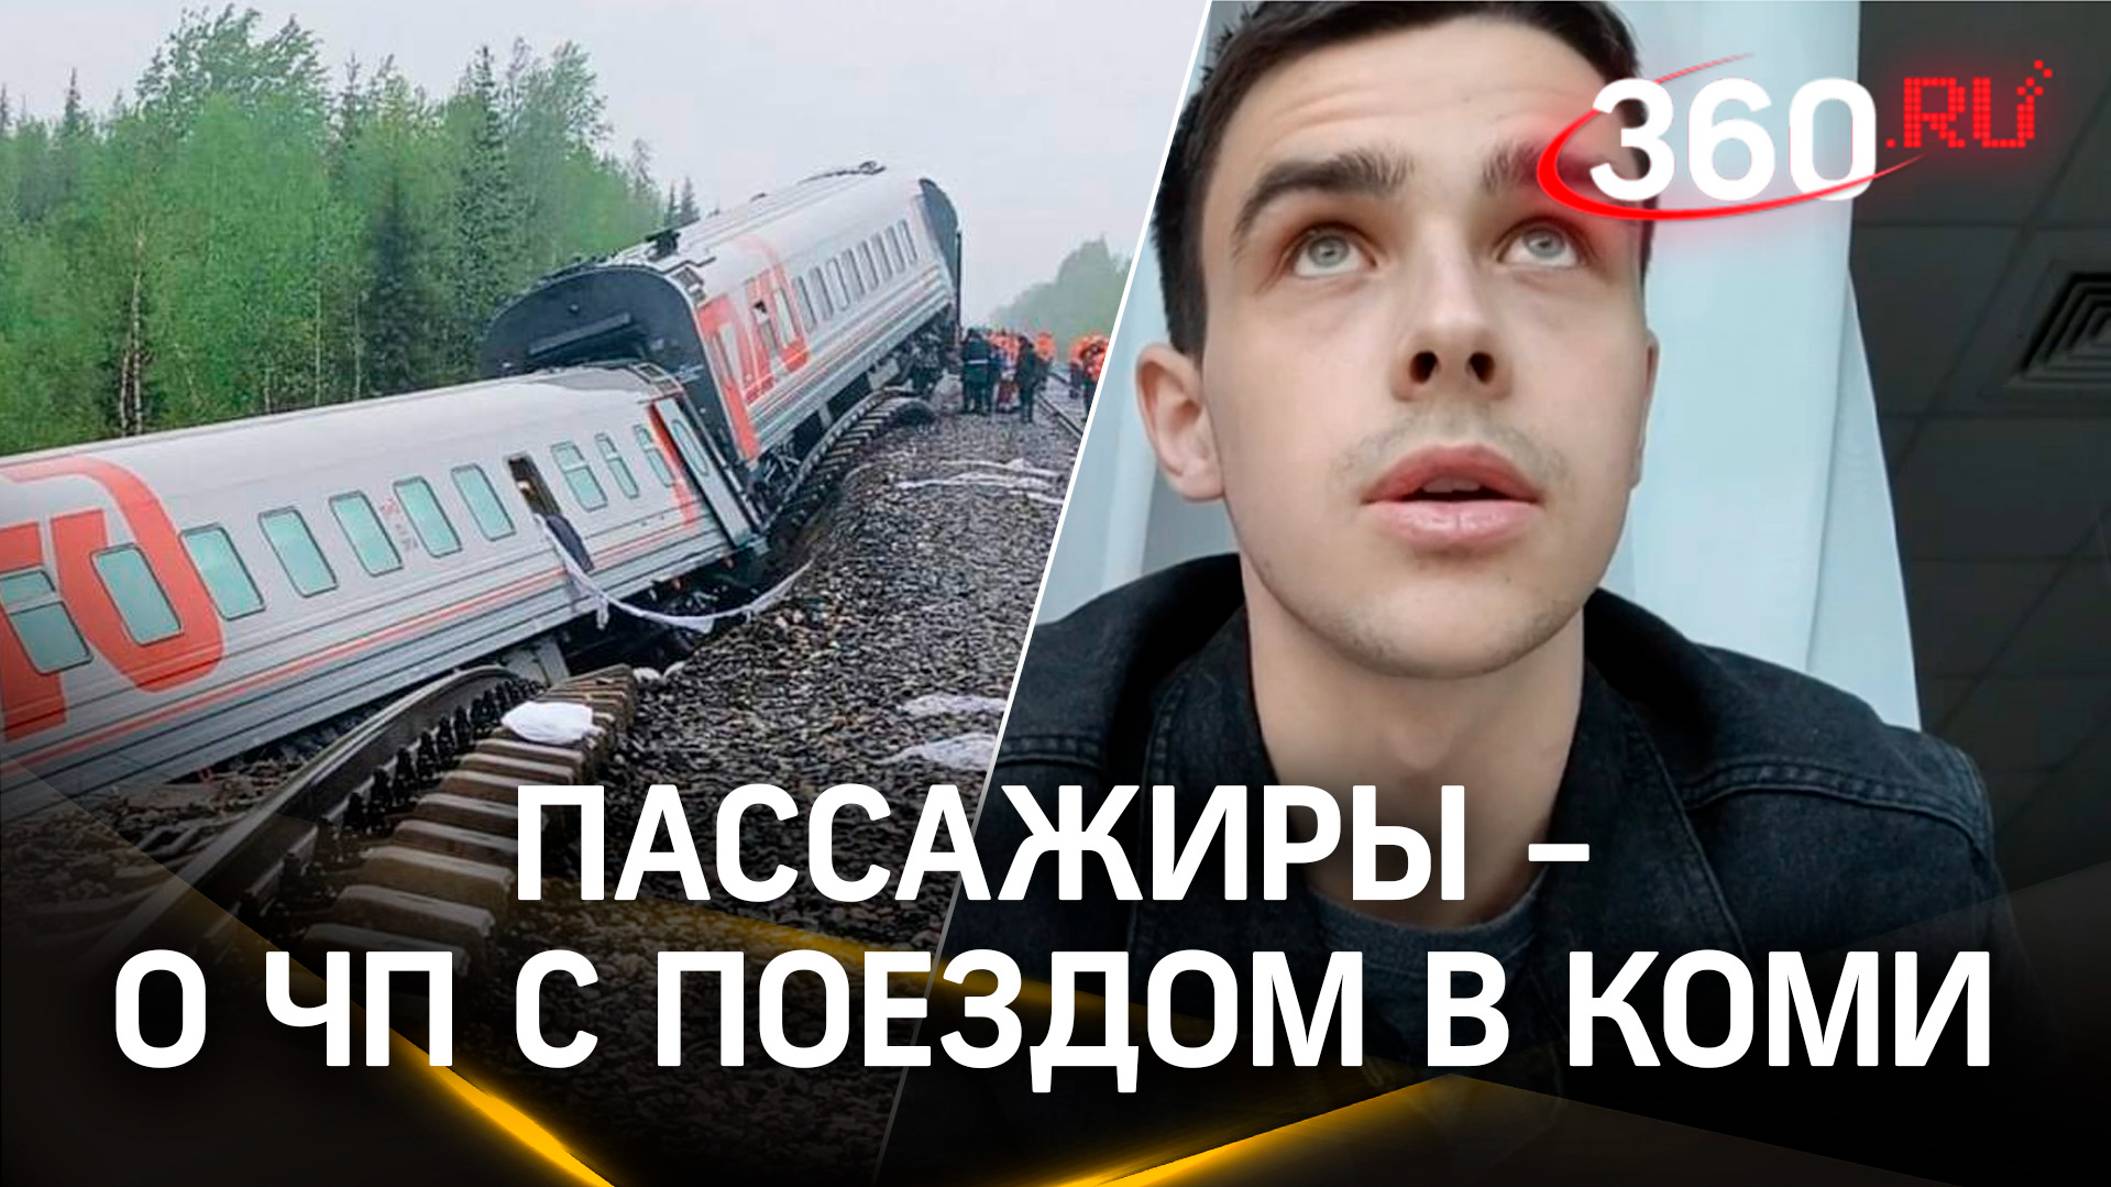 «Я сейчас умру!»: пассажиров швыряло по вагонам, поезд затапливало. Первые минуты катастрофы в Коми